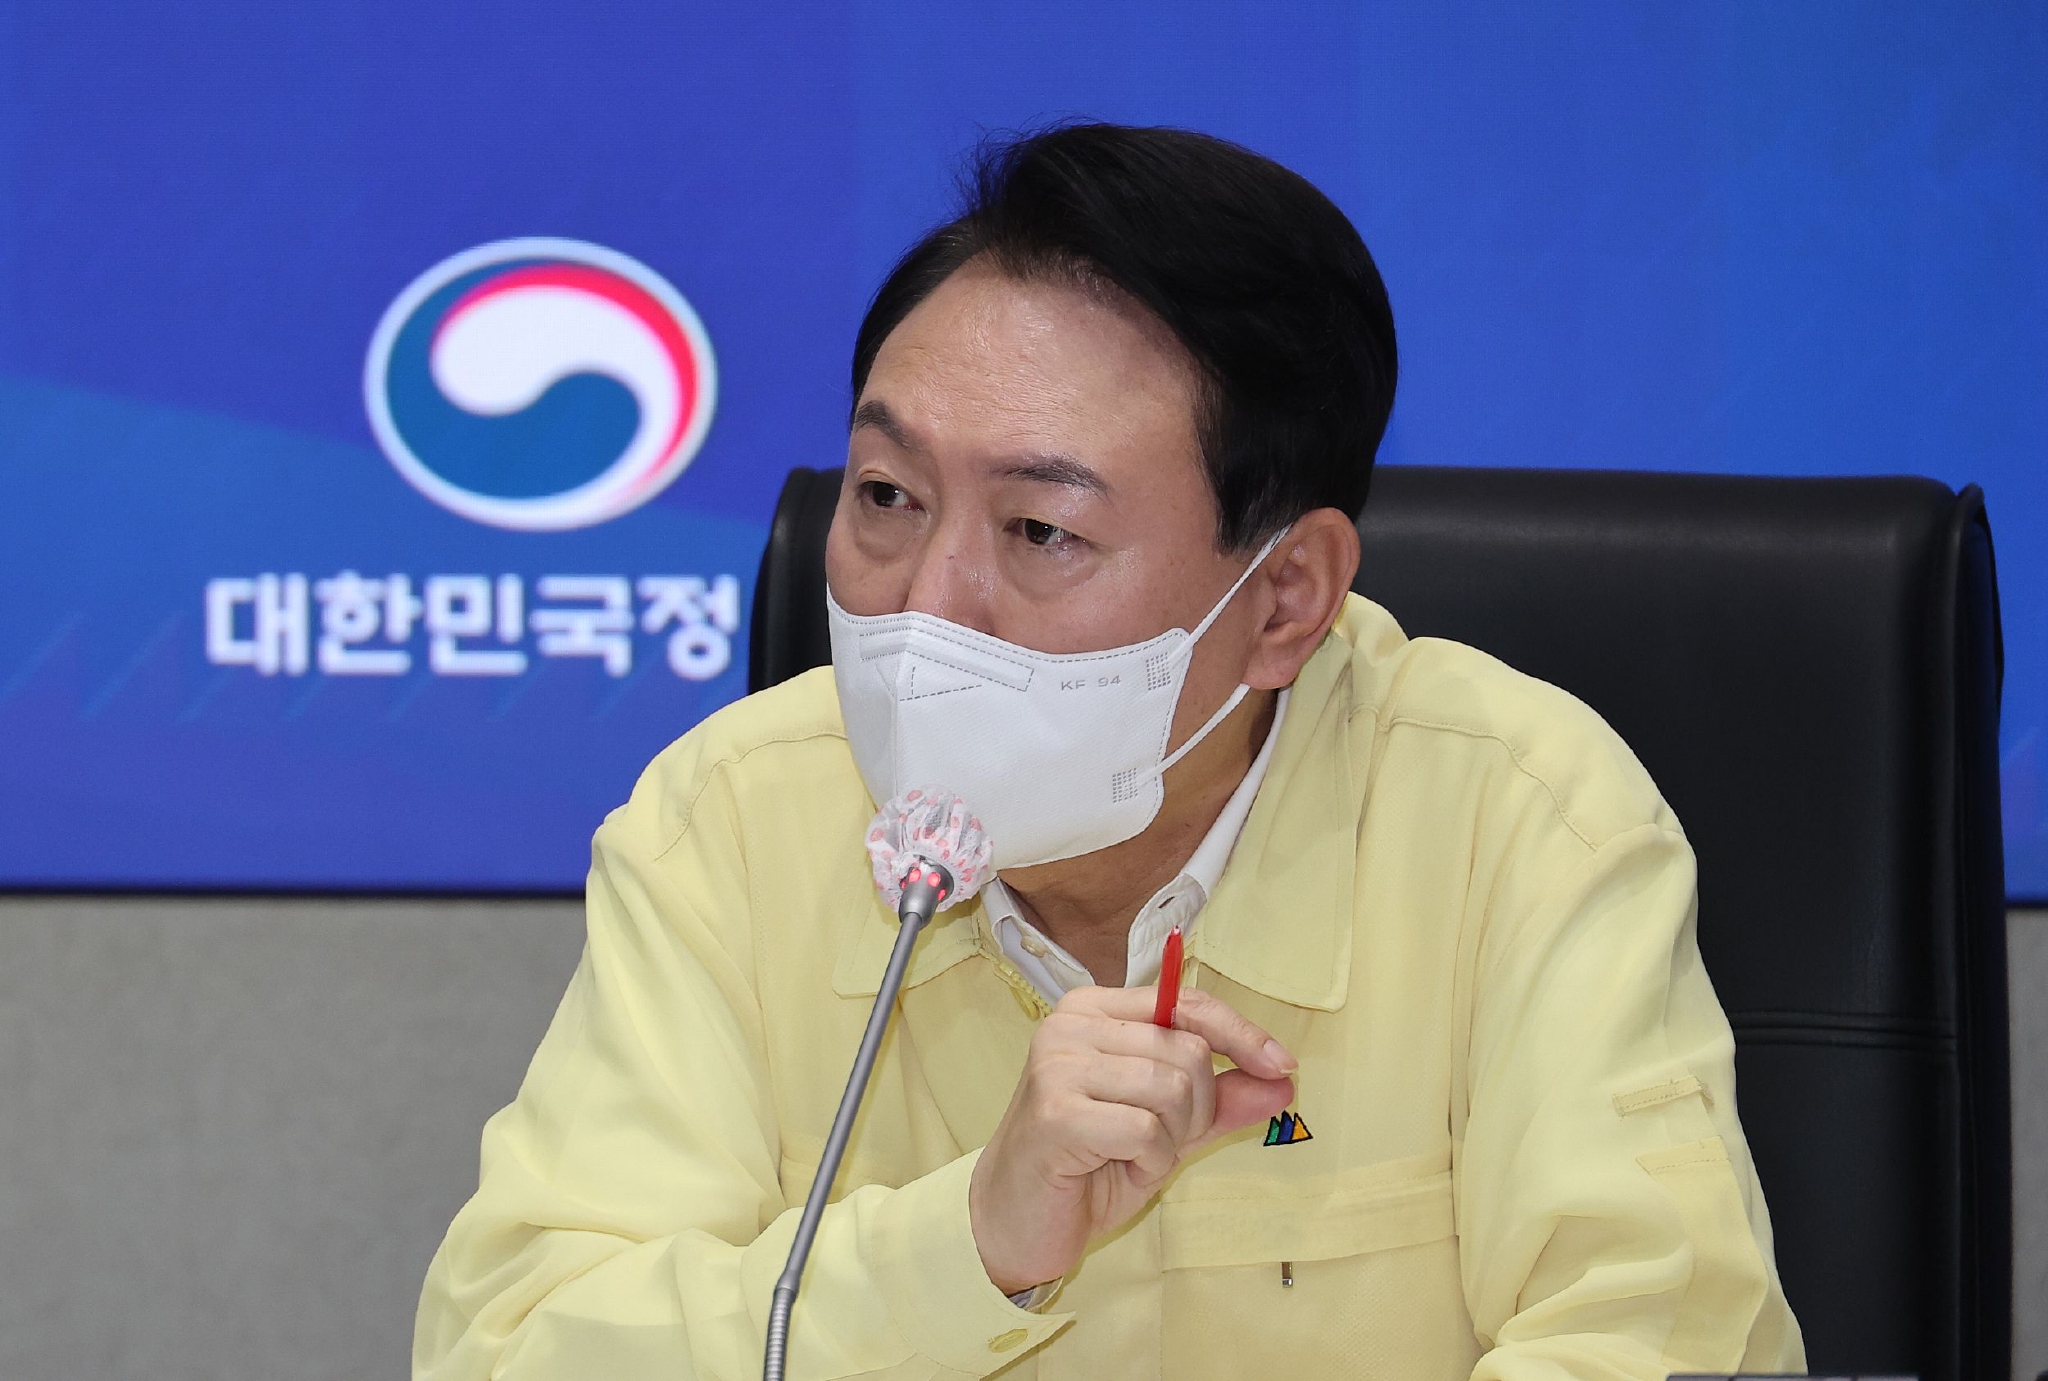 韩国总统就梨泰院踩踏事故公开道歉 | 极目新闻